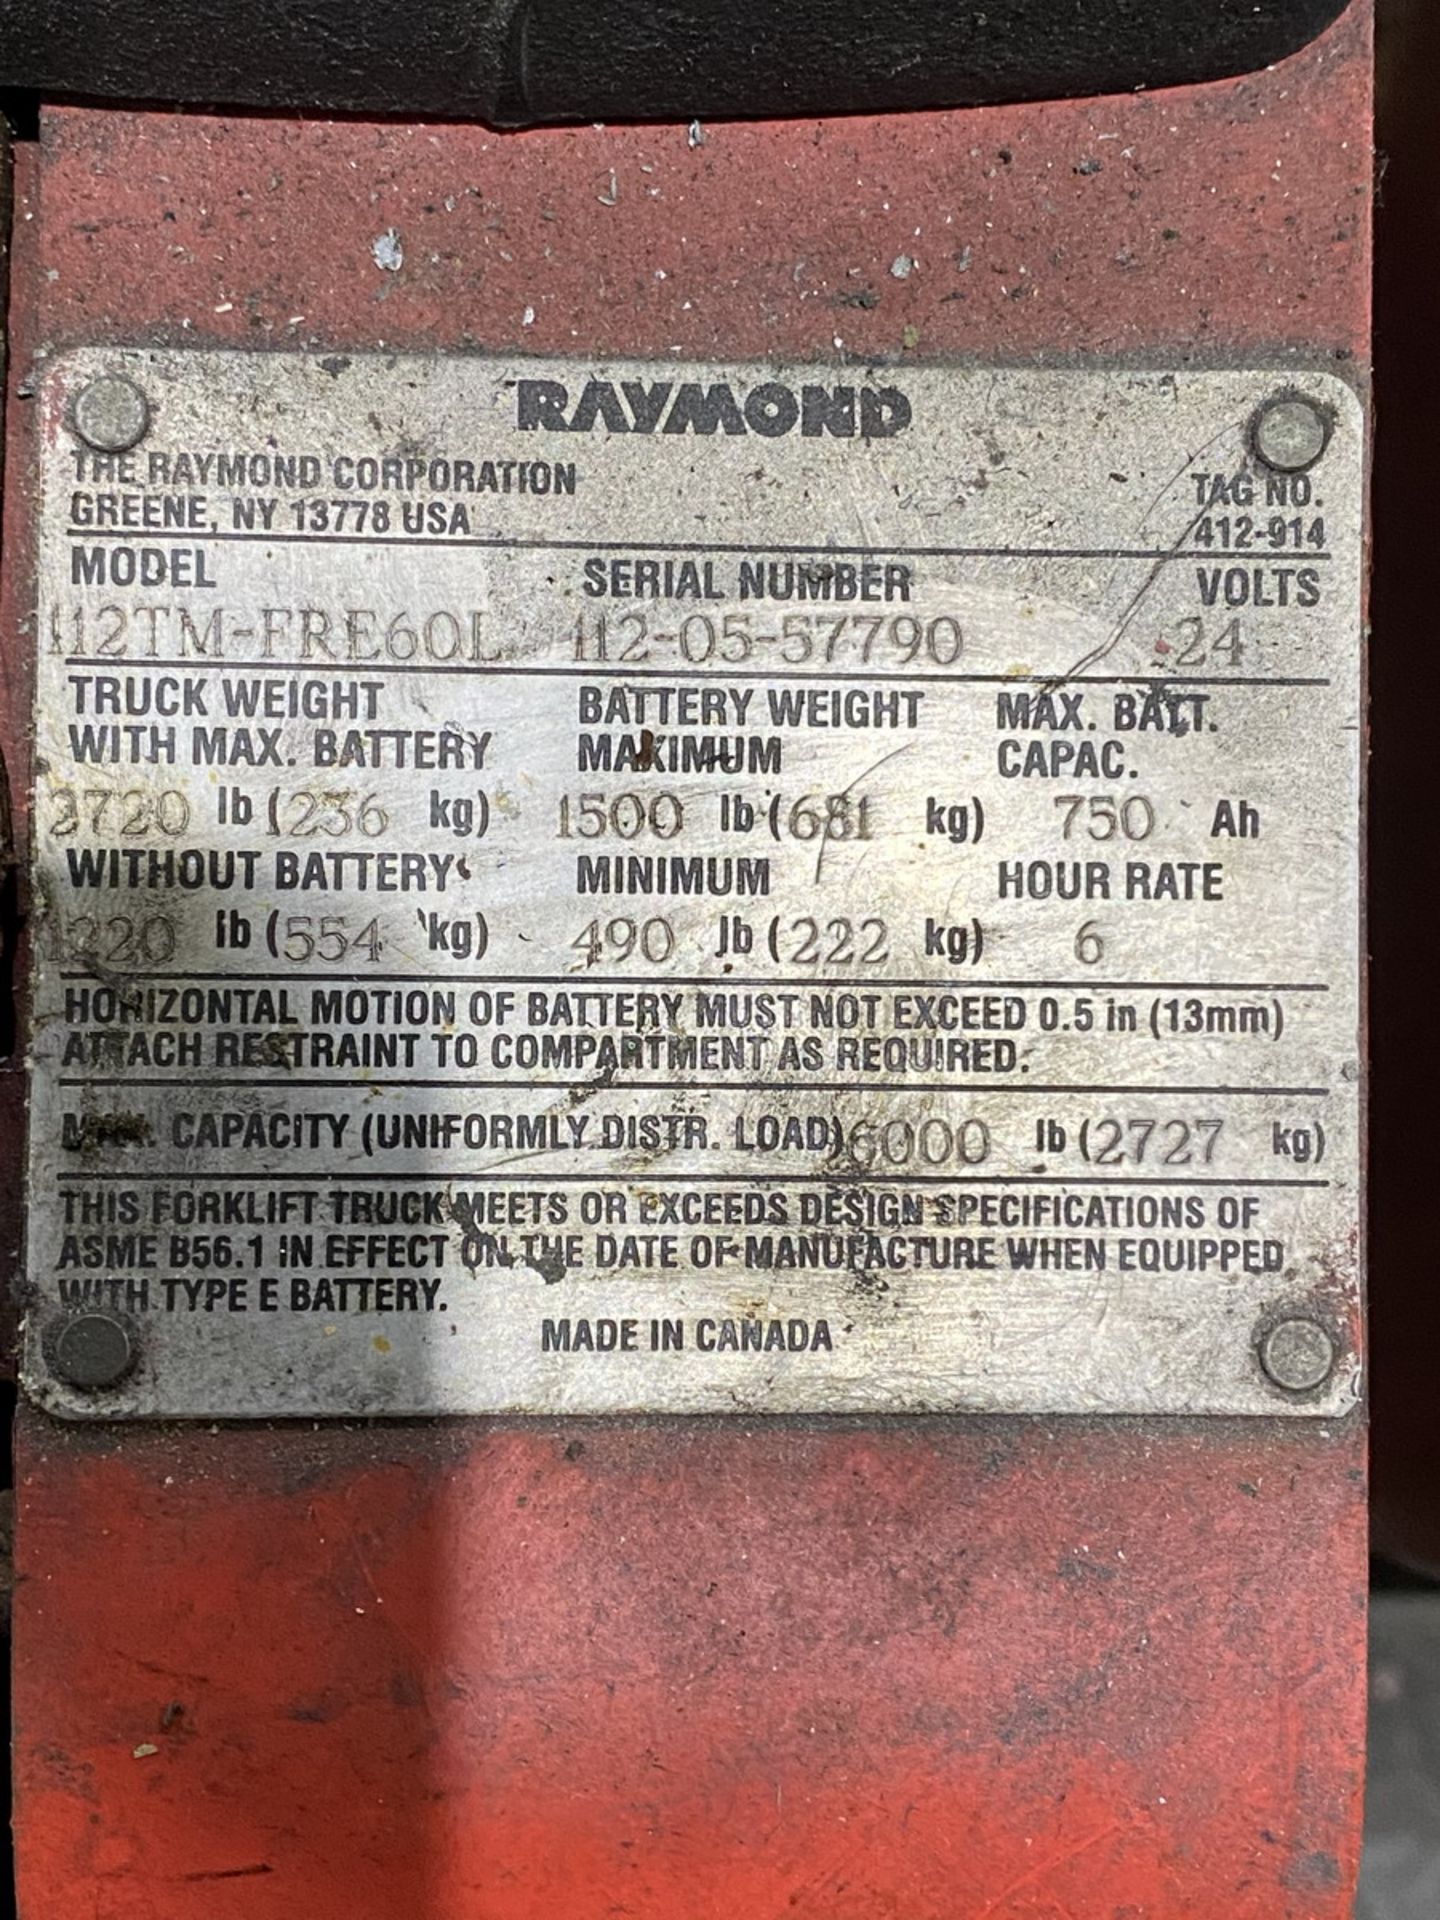 Raymond 6,000 lb. Cap. Model 112TM-FRE60L Electric Pallet Jack, S/N: 112-505-57790; 24-Volt - Image 5 of 5